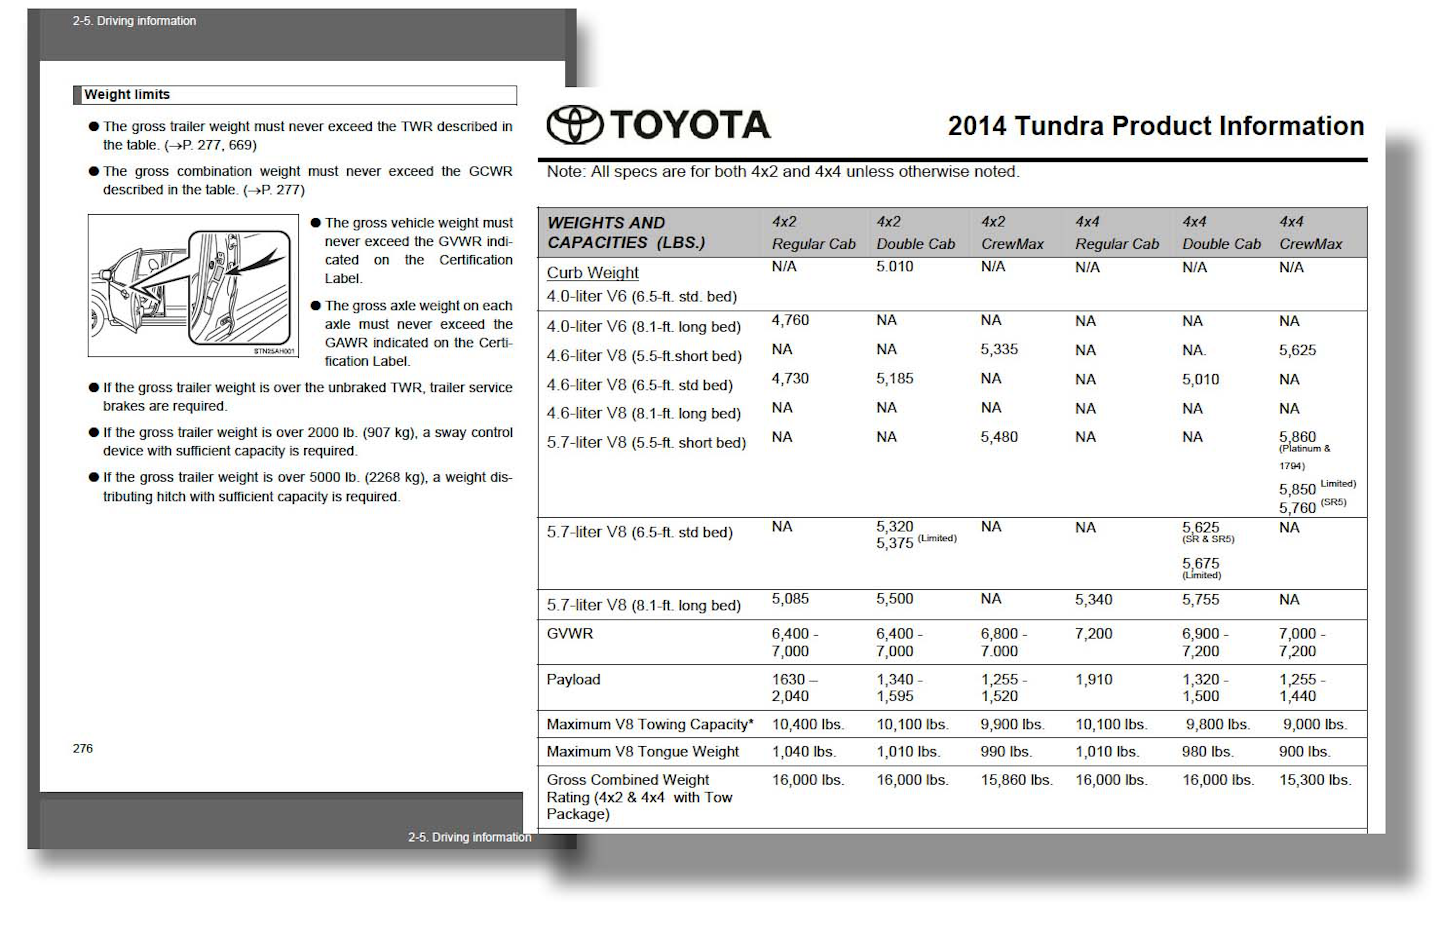 ROAD TEST: 2014 Toyota Tundra Crew Max Platinum | Hard Working Trucks